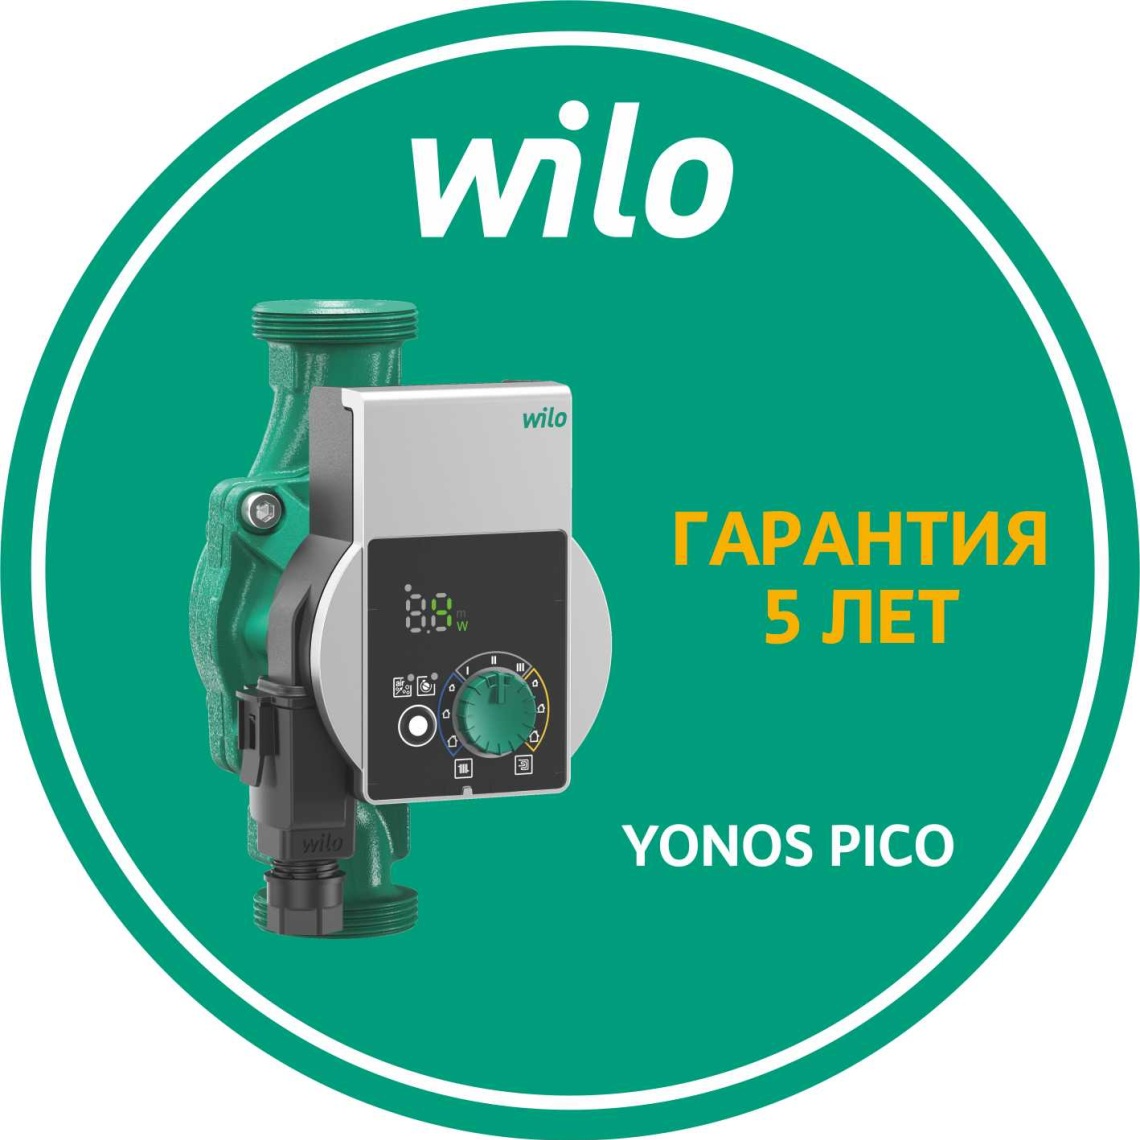 Увеличение гарантии на высокоэффективные и стандартные насосы Wilo бытового сегмента